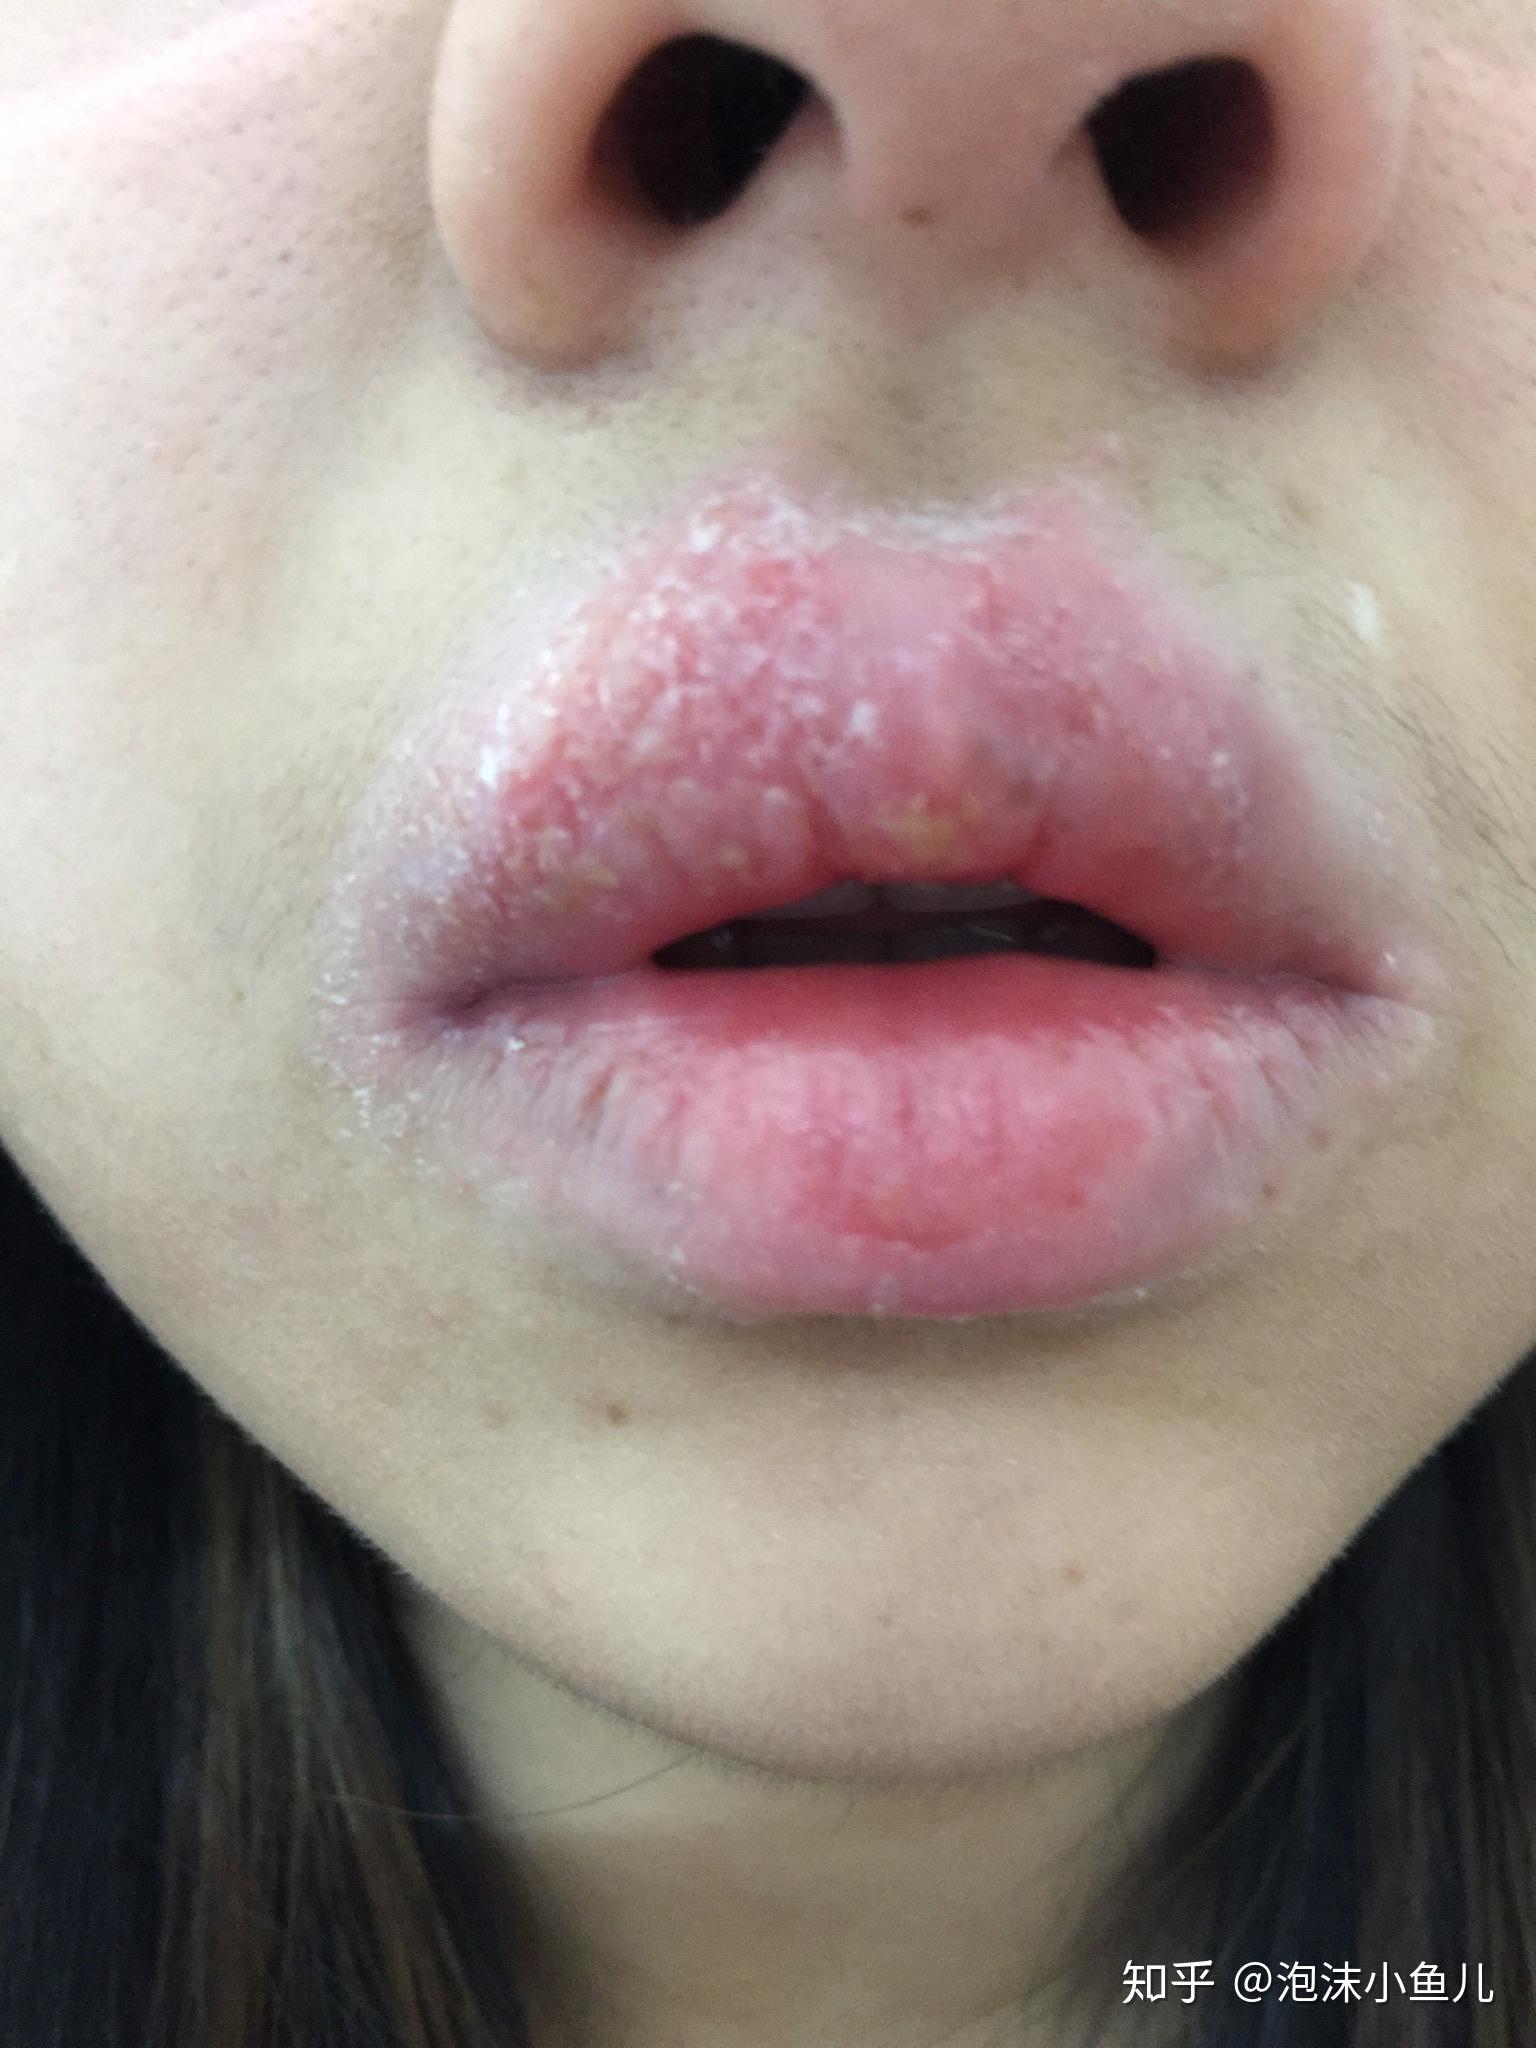 唇炎病案1例